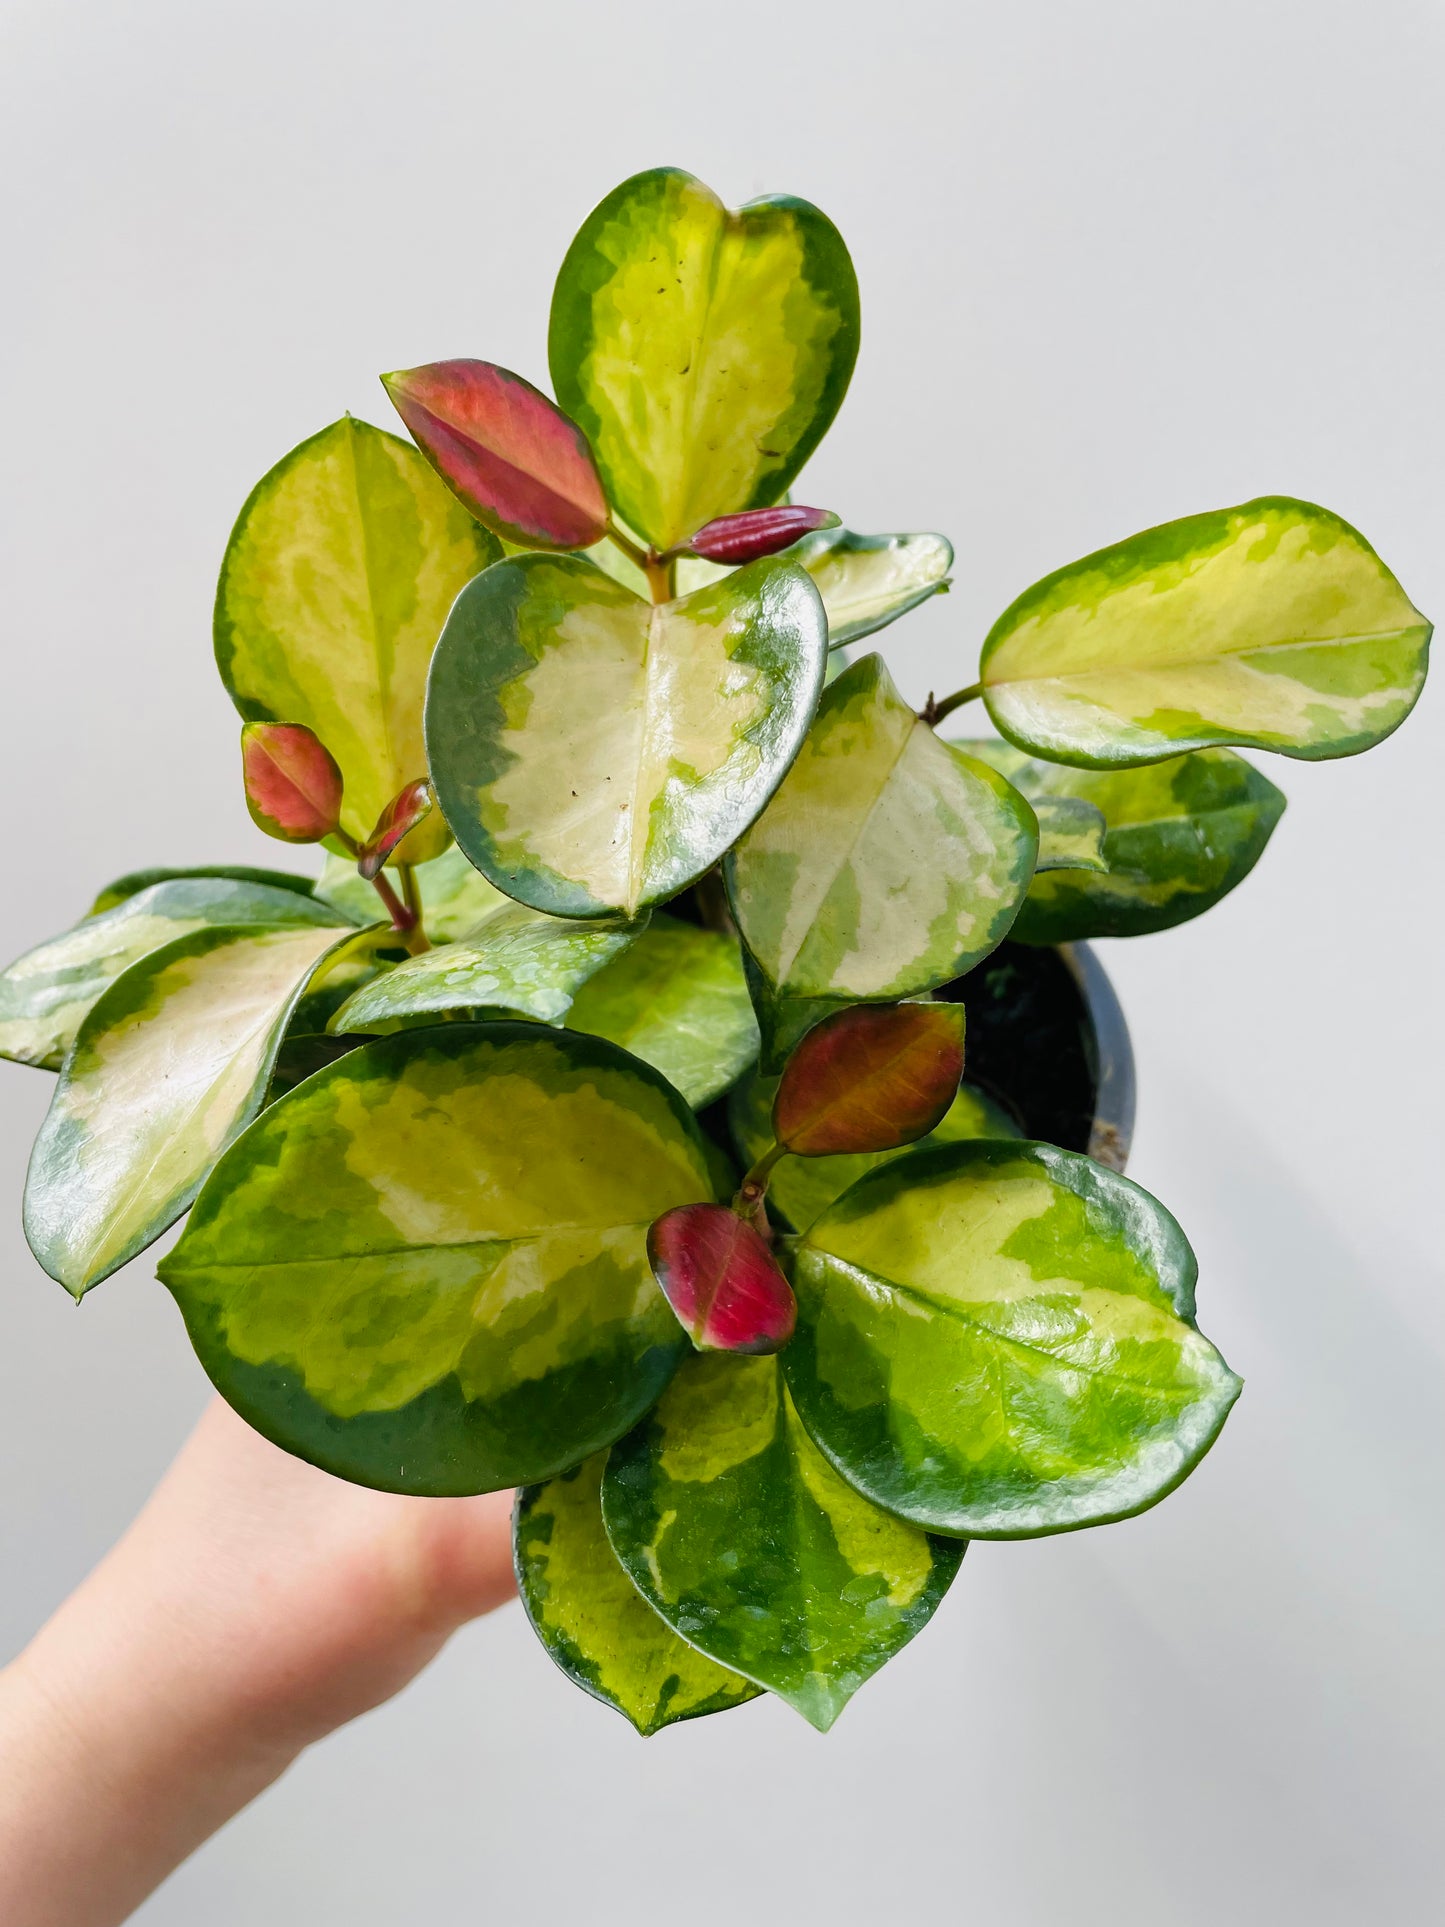 Bilde av Hoya australis ‘Lisa’ 12 cm potte-Spanne Plantesalg